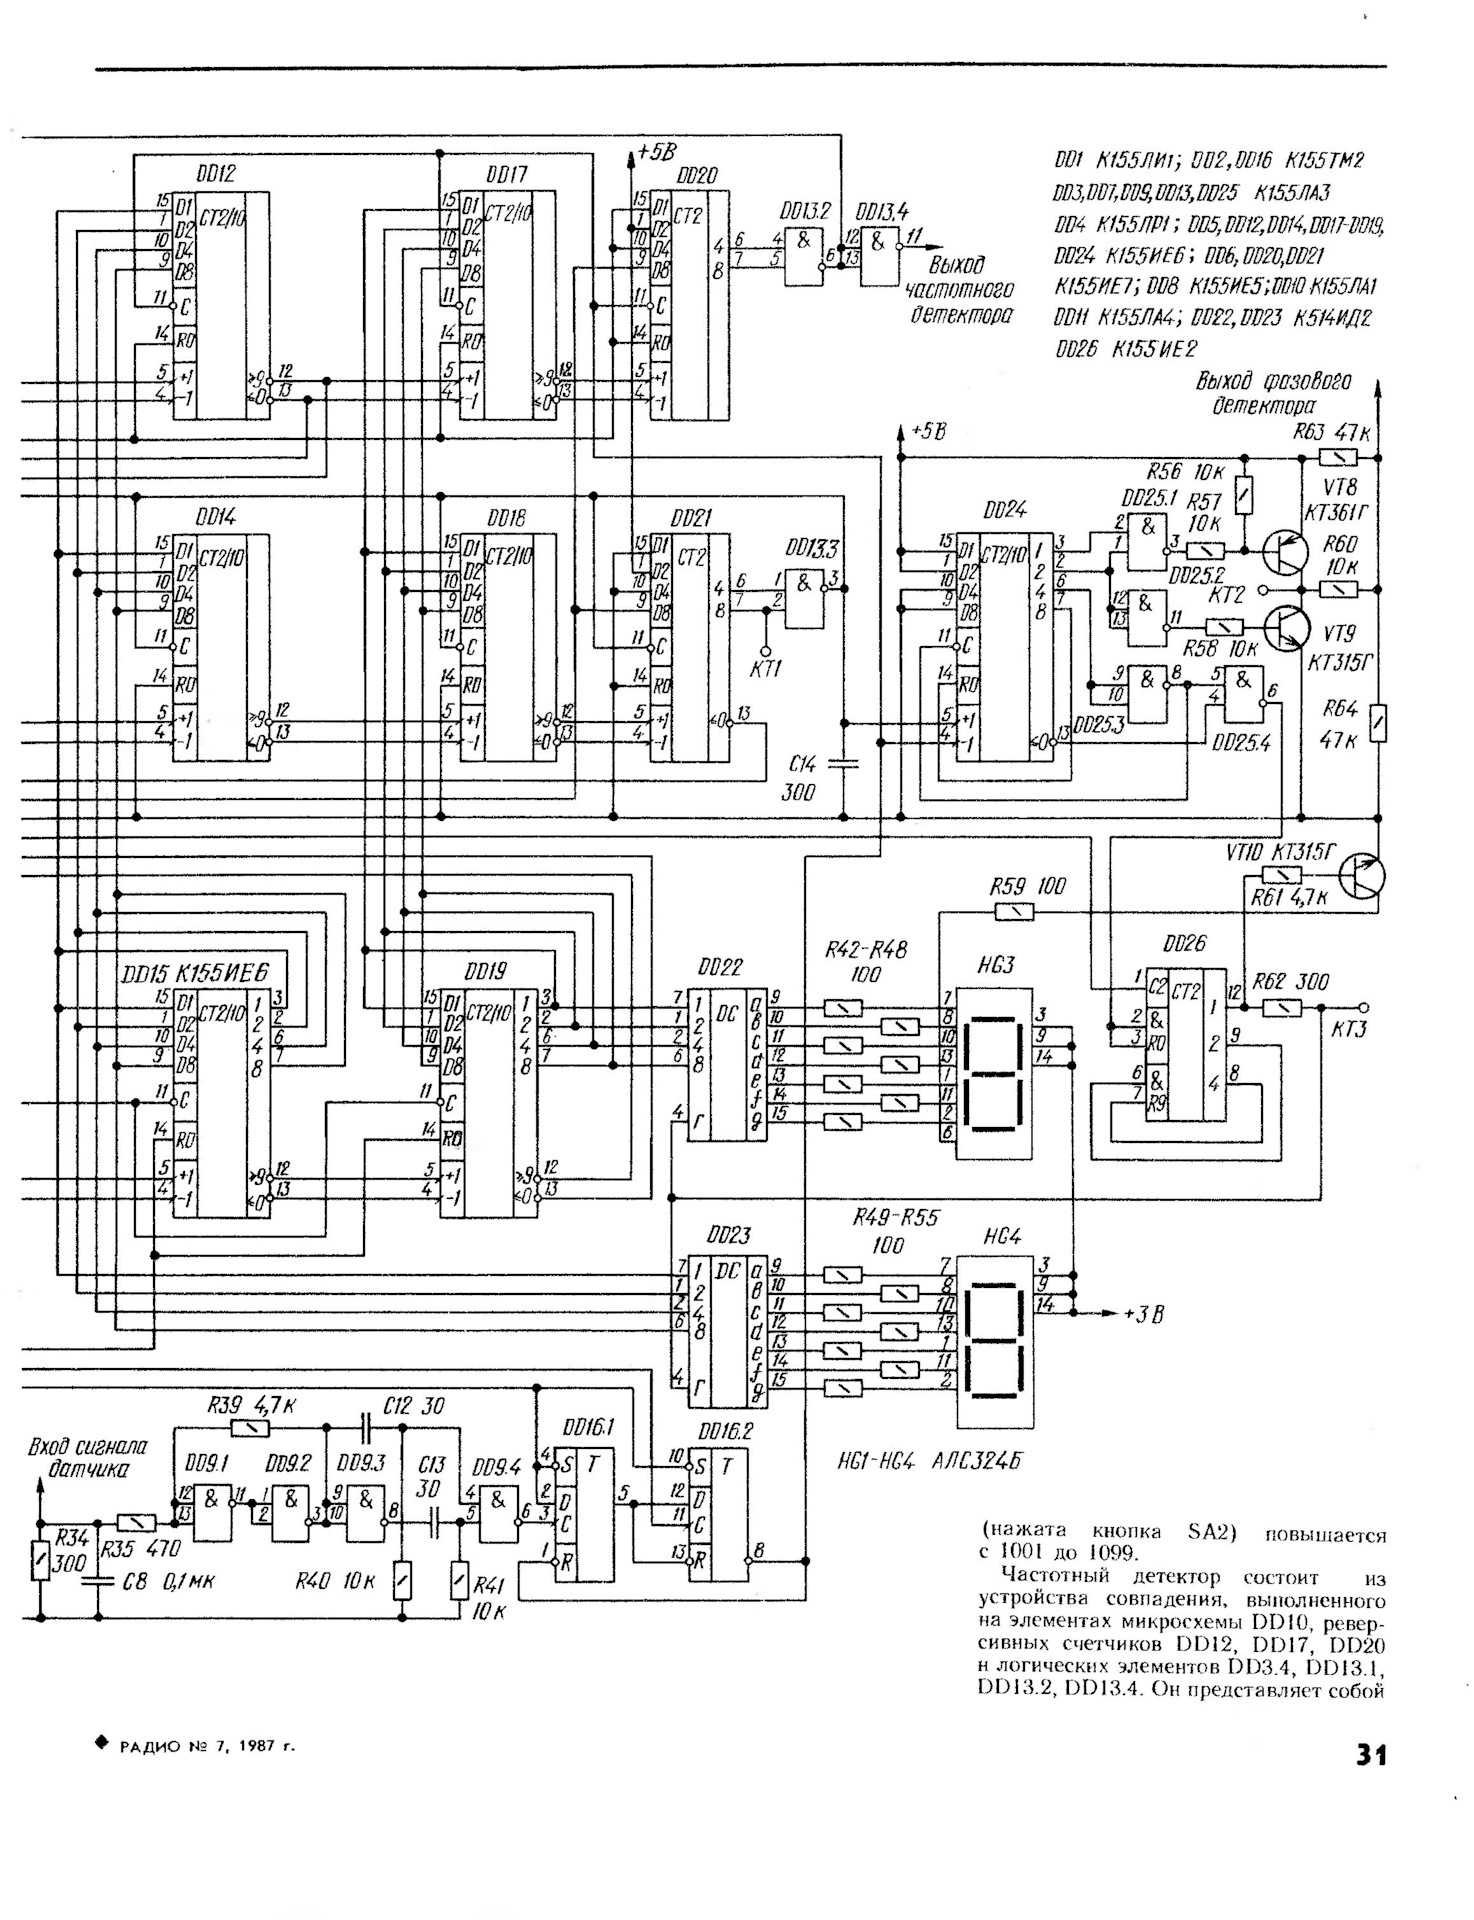 Электроника эп 017 стерео содержание драгметаллов